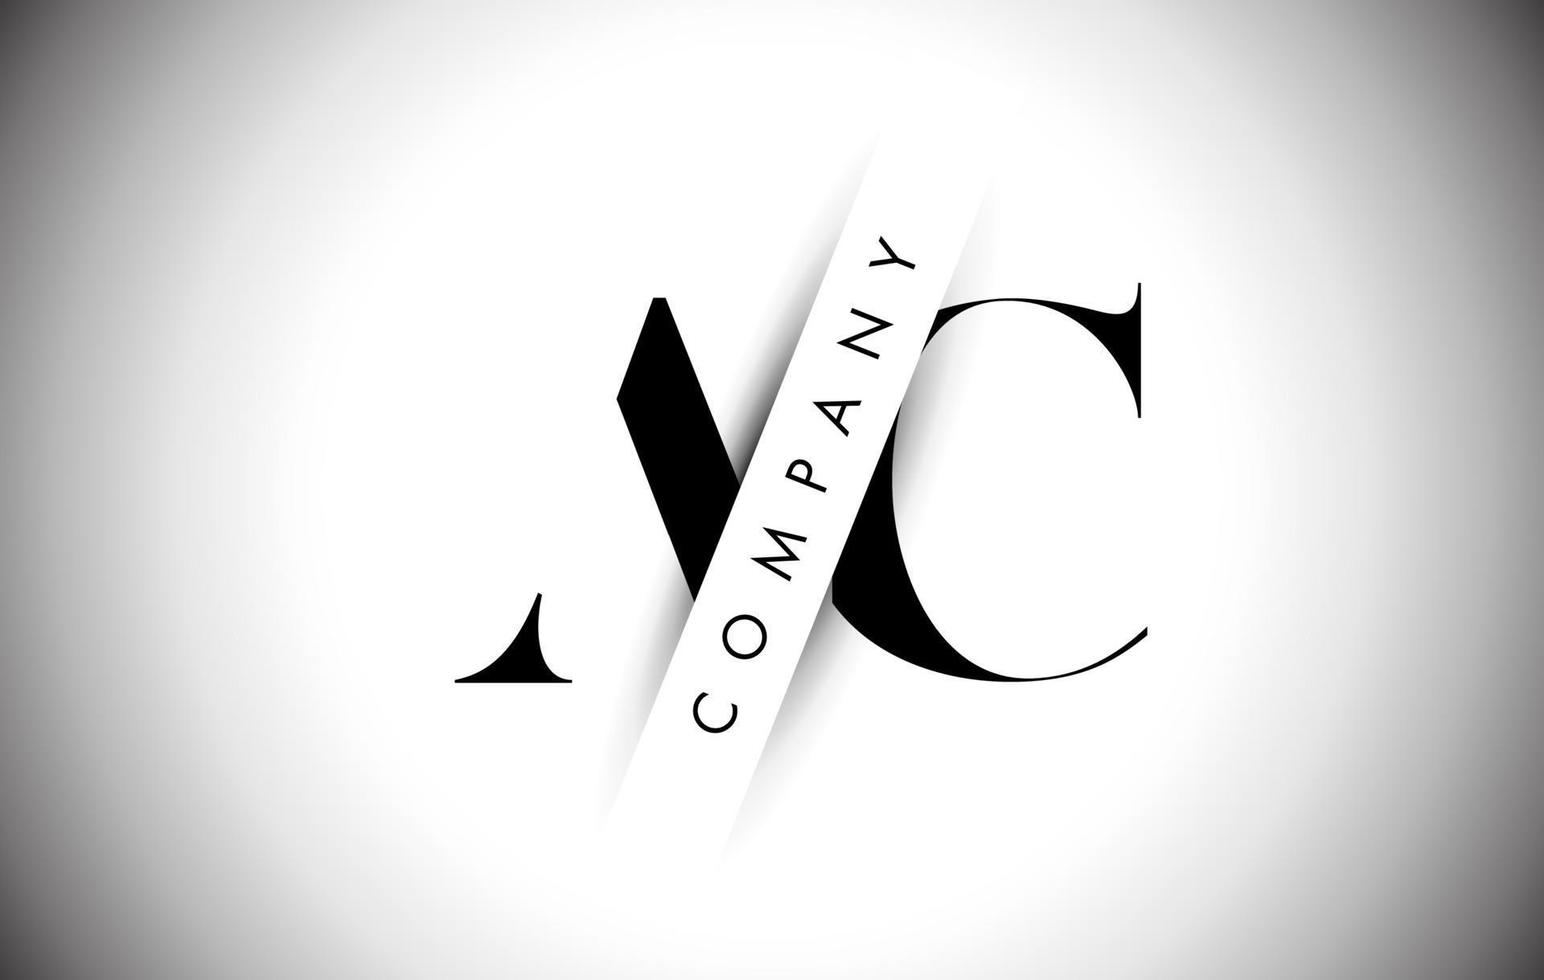 ac ac letter-logo met creatieve schaduwsnede en gelaagd tekstontwerp. vector